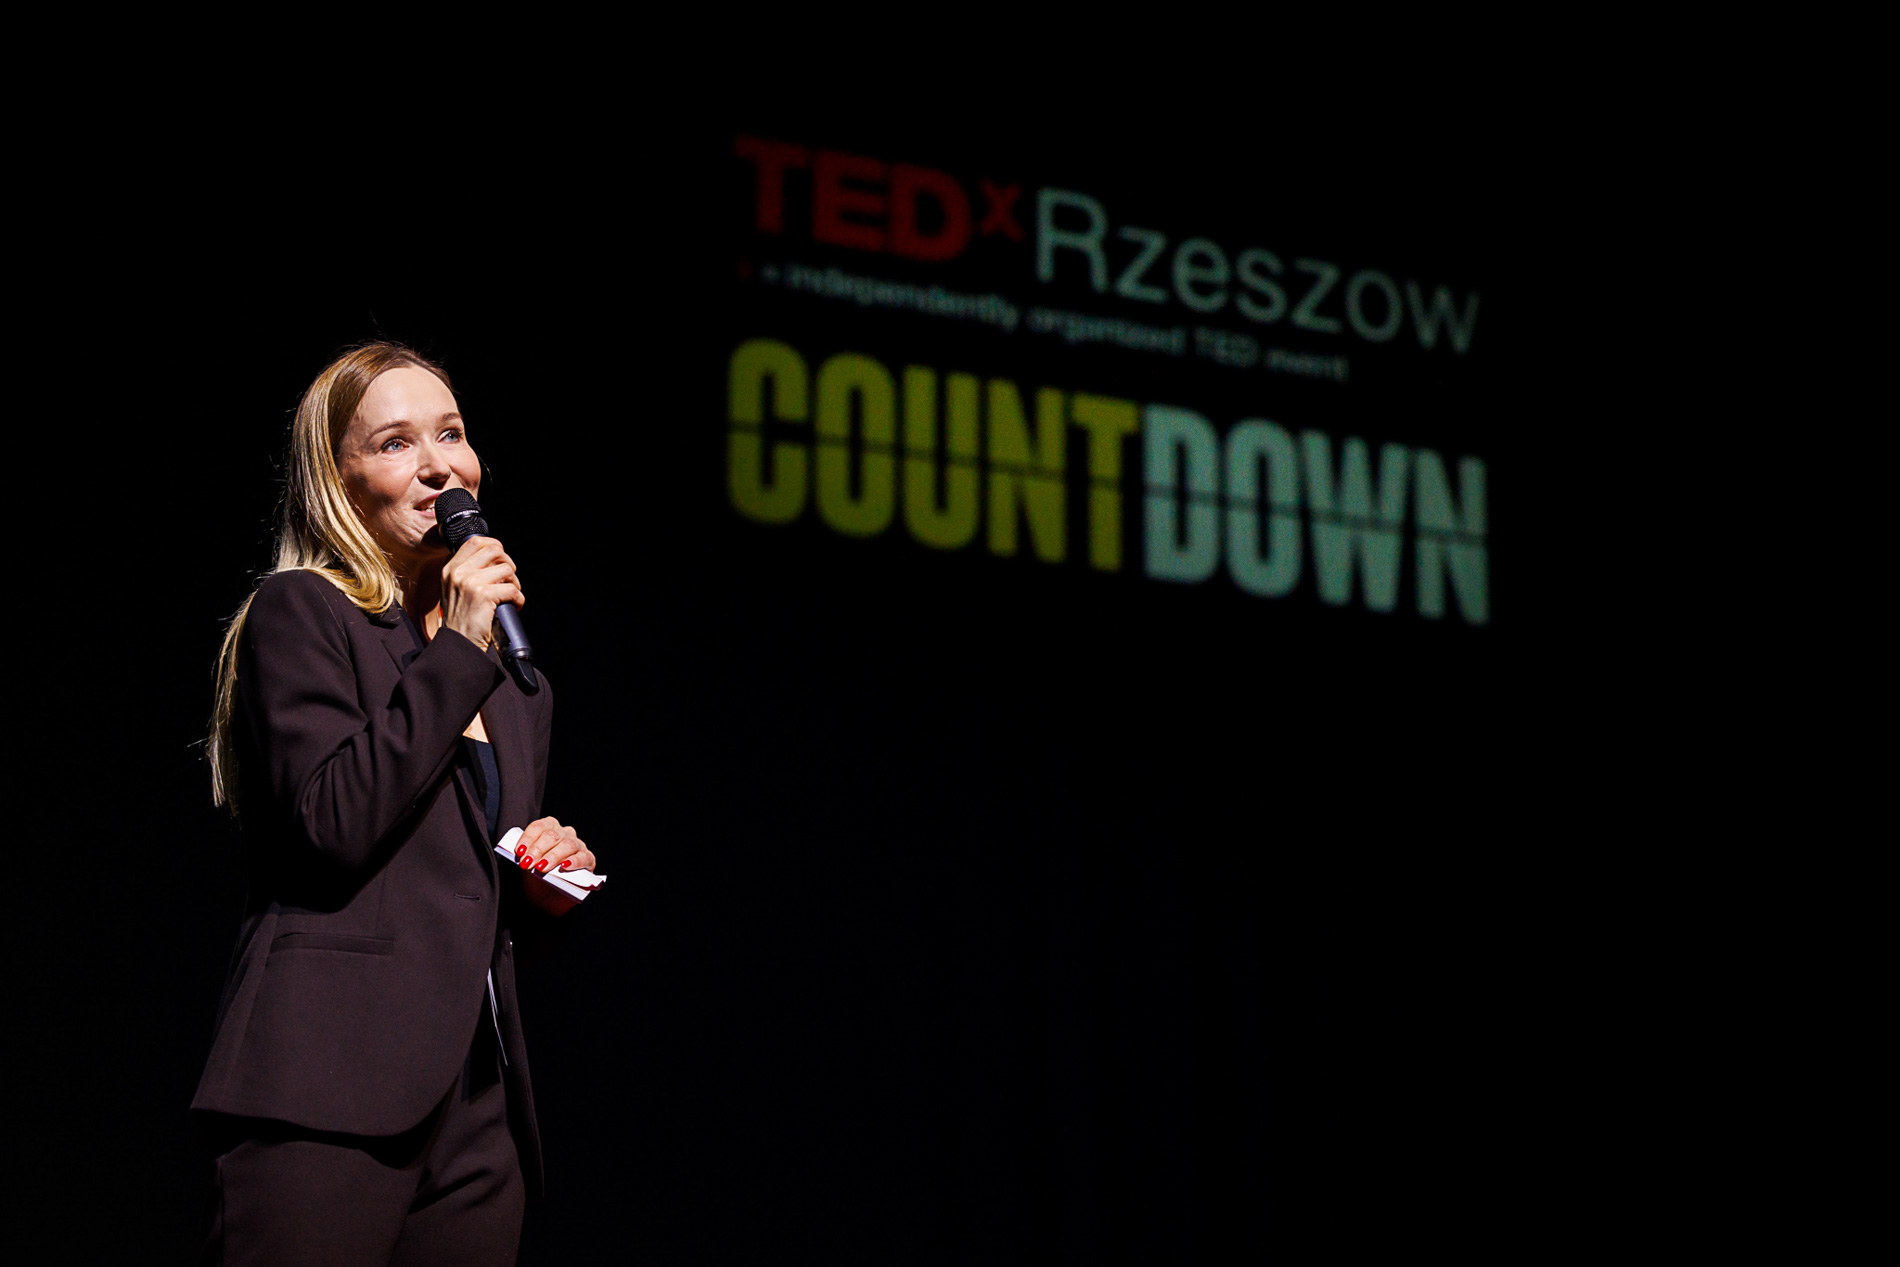 Prelegentka dr Joanna Remiszewska na scenie podczas wydarzenia TEDx Rzeszów Countdown WSIiZ